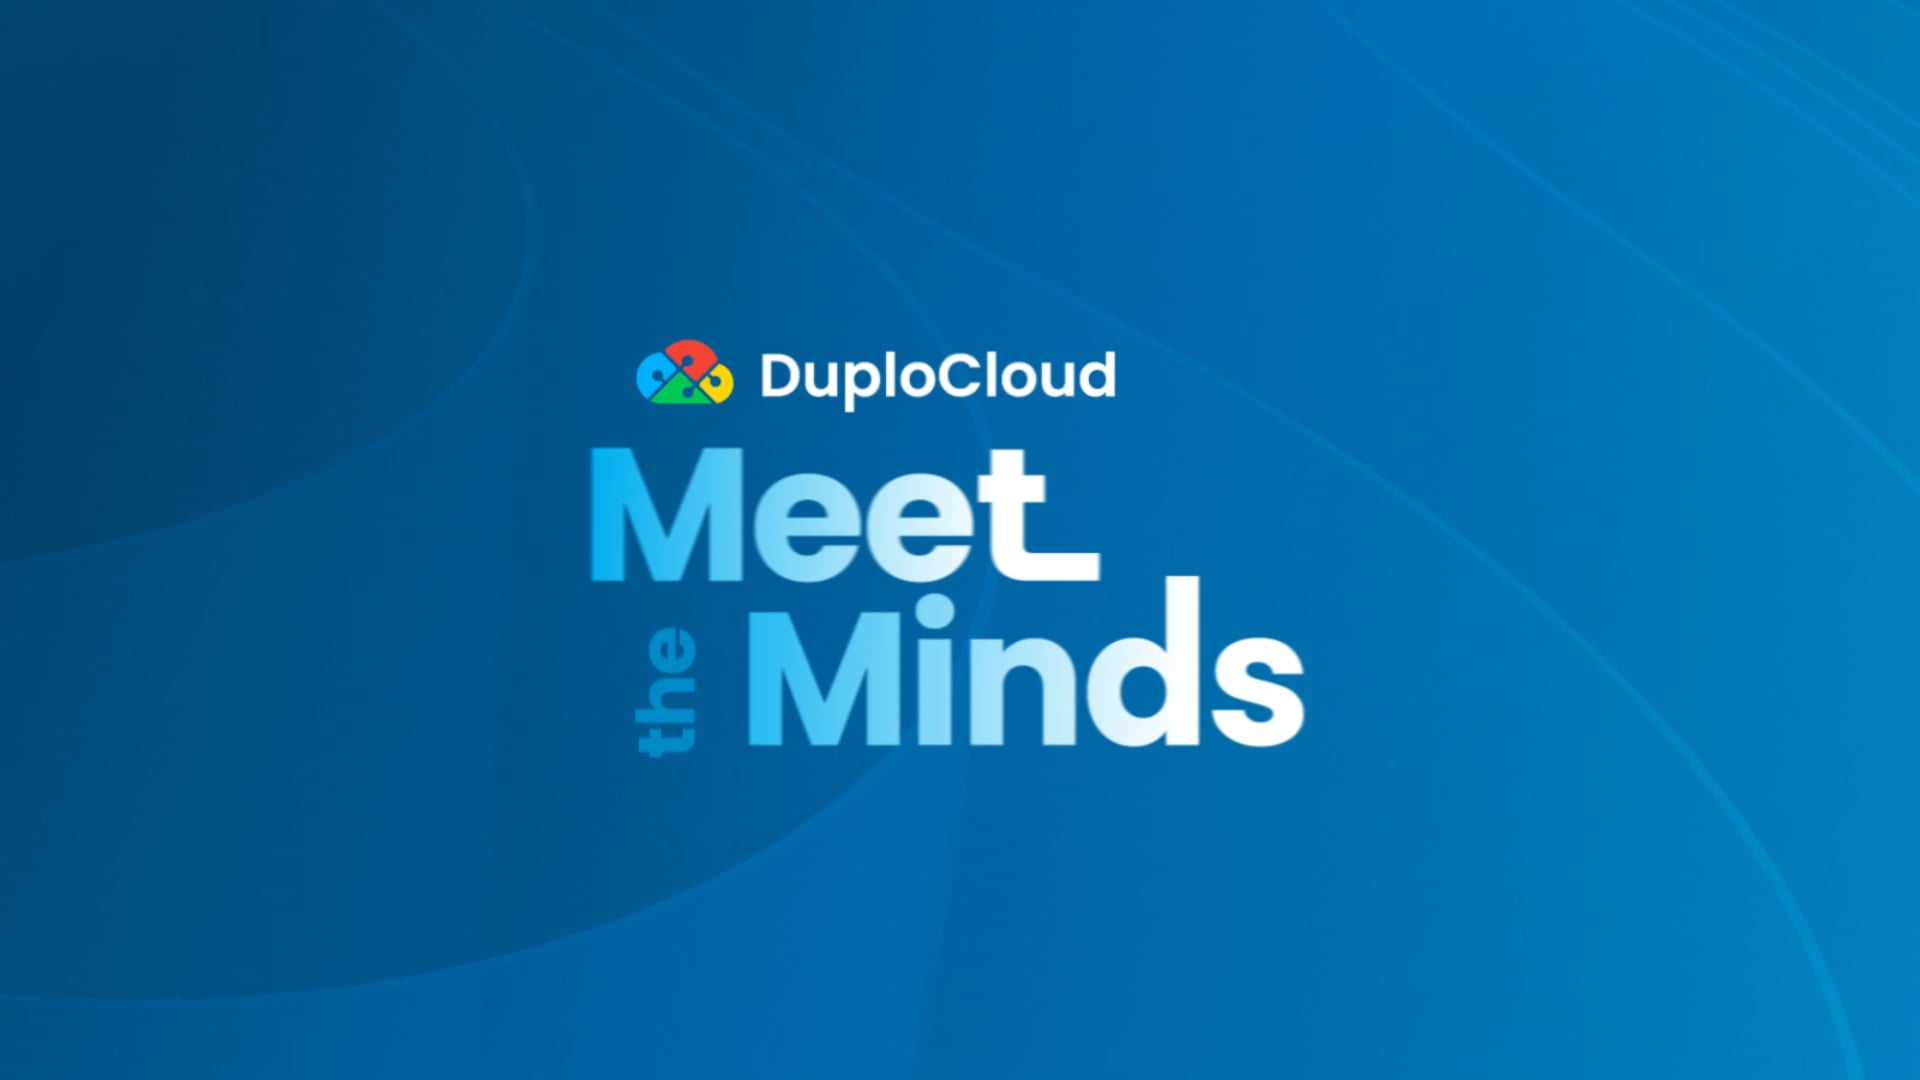 DuploCloud Meet the Minds - Cloud Migration